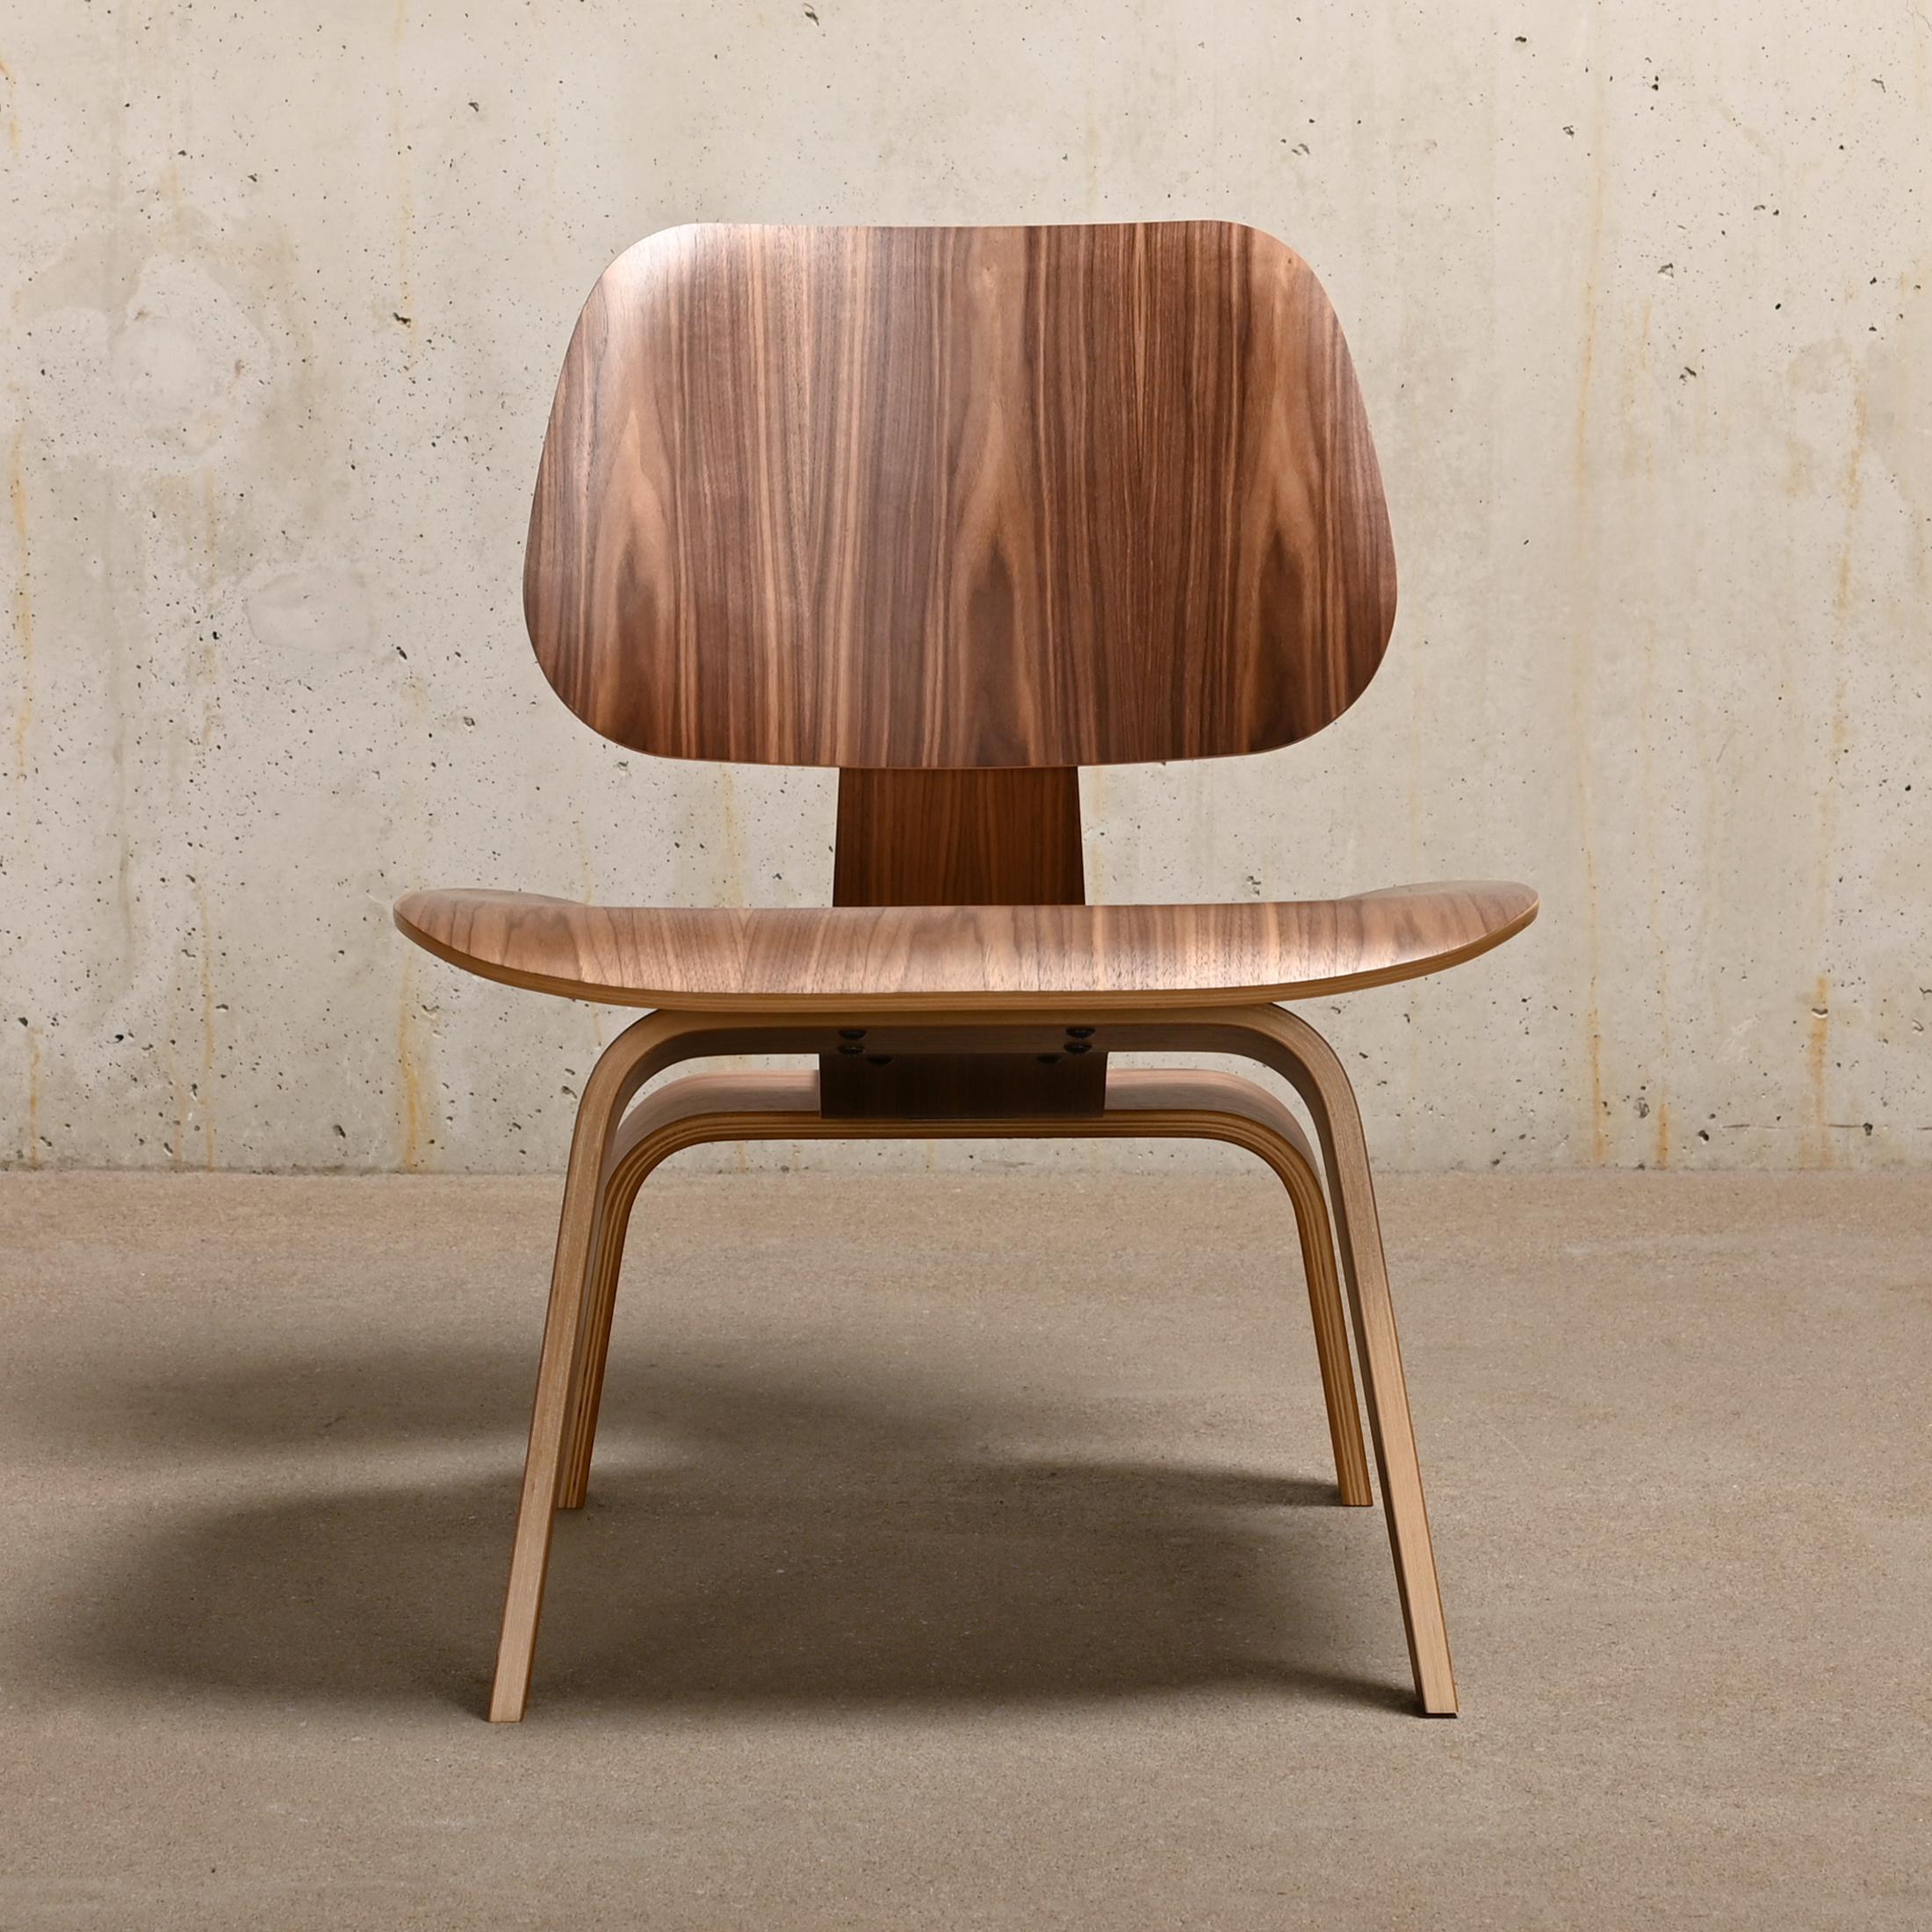 Der ikonische LCW Lounge Chair, entworfen von Charles & Ray Eames aus Walnuss-Sperrholz und hergestellt von Herman Miller USA. Das Furnier und der Stuhl sind in sehr gutem / ausgezeichnetem, neuwertigem Zustand mit minimalen Gebrauchsspuren.